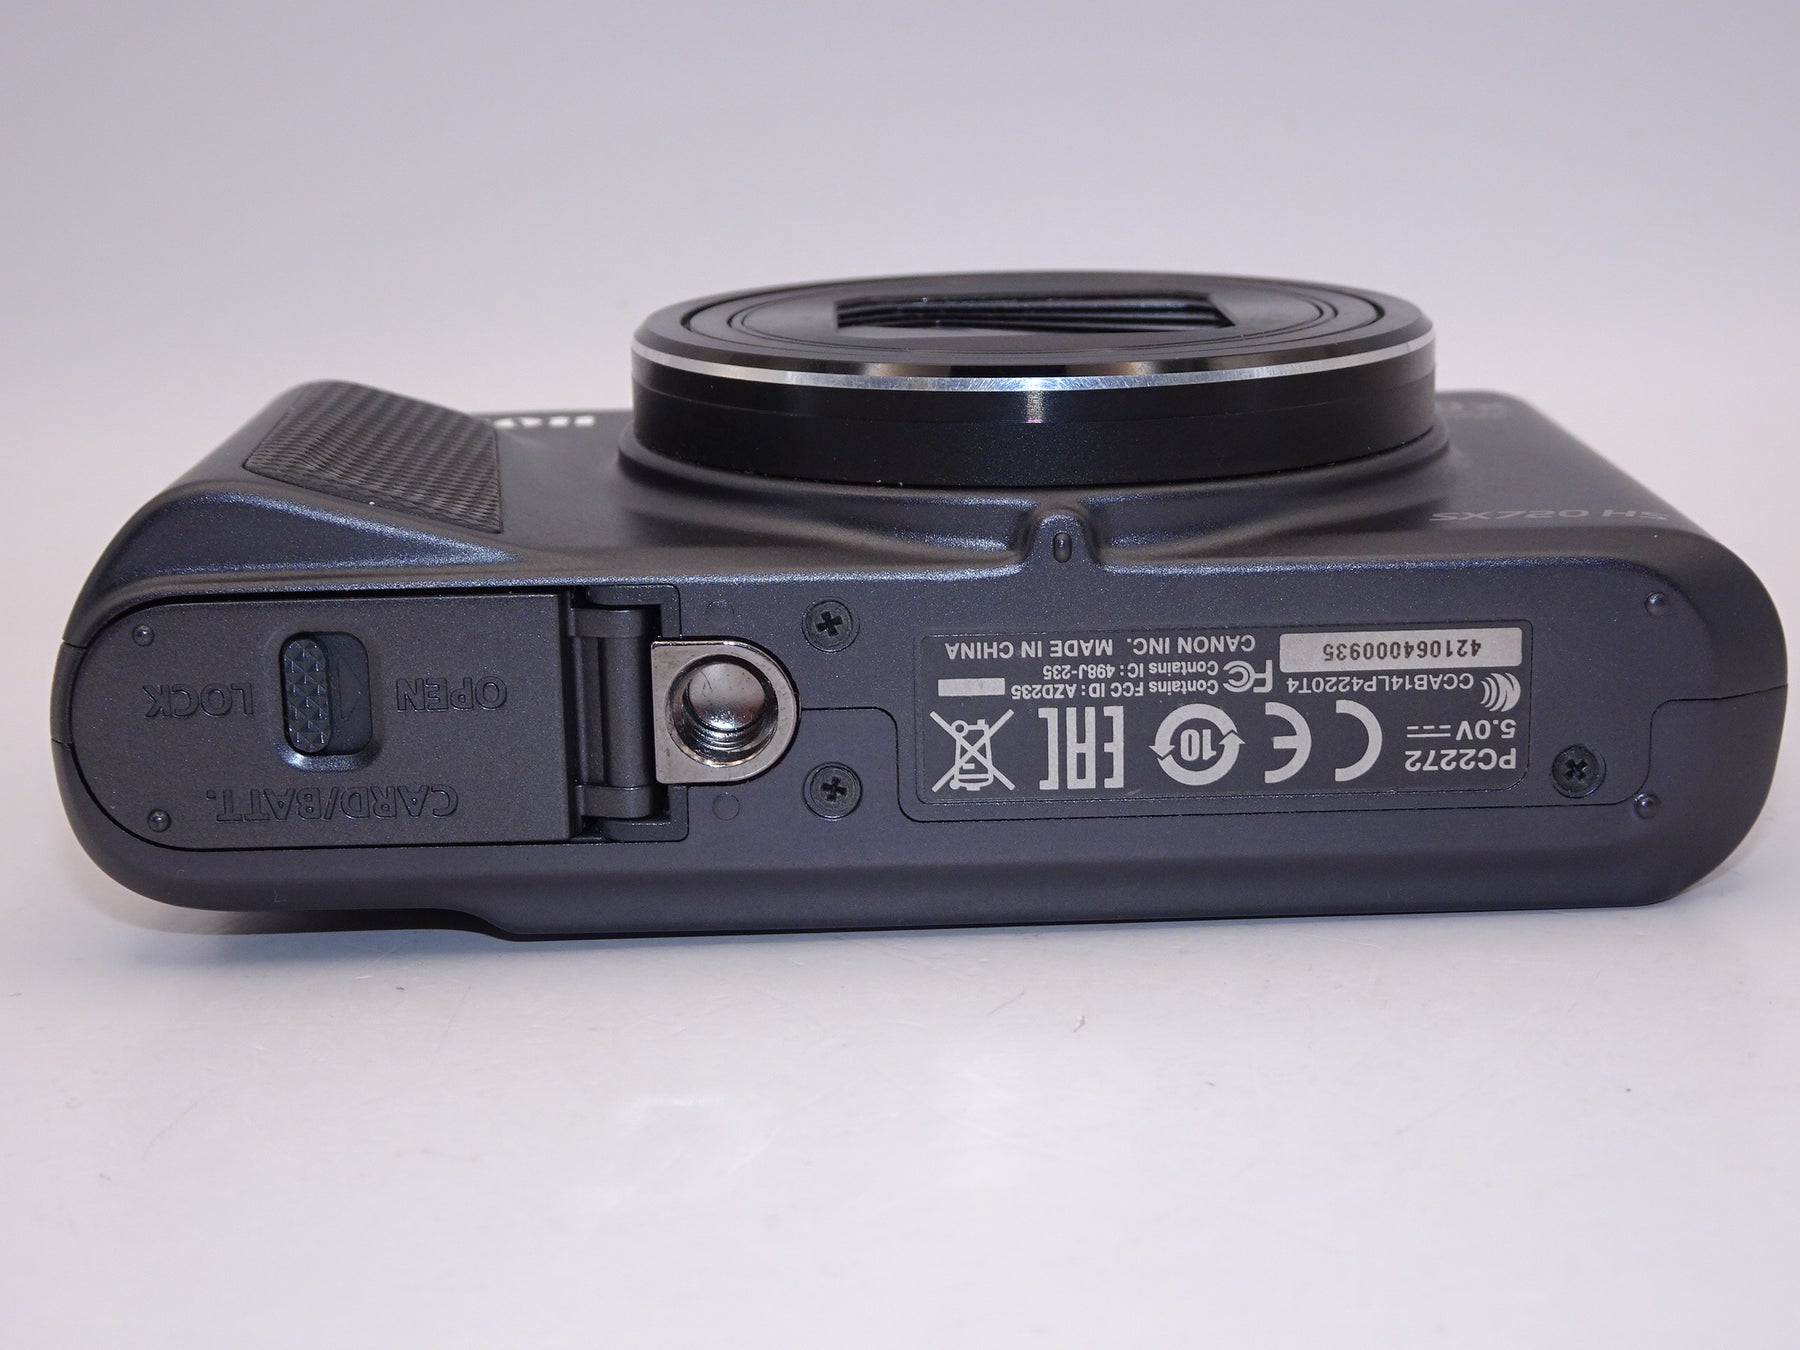 【外観特上級】Canon デジタルカメラ PowerShot SX720 HS ブラック